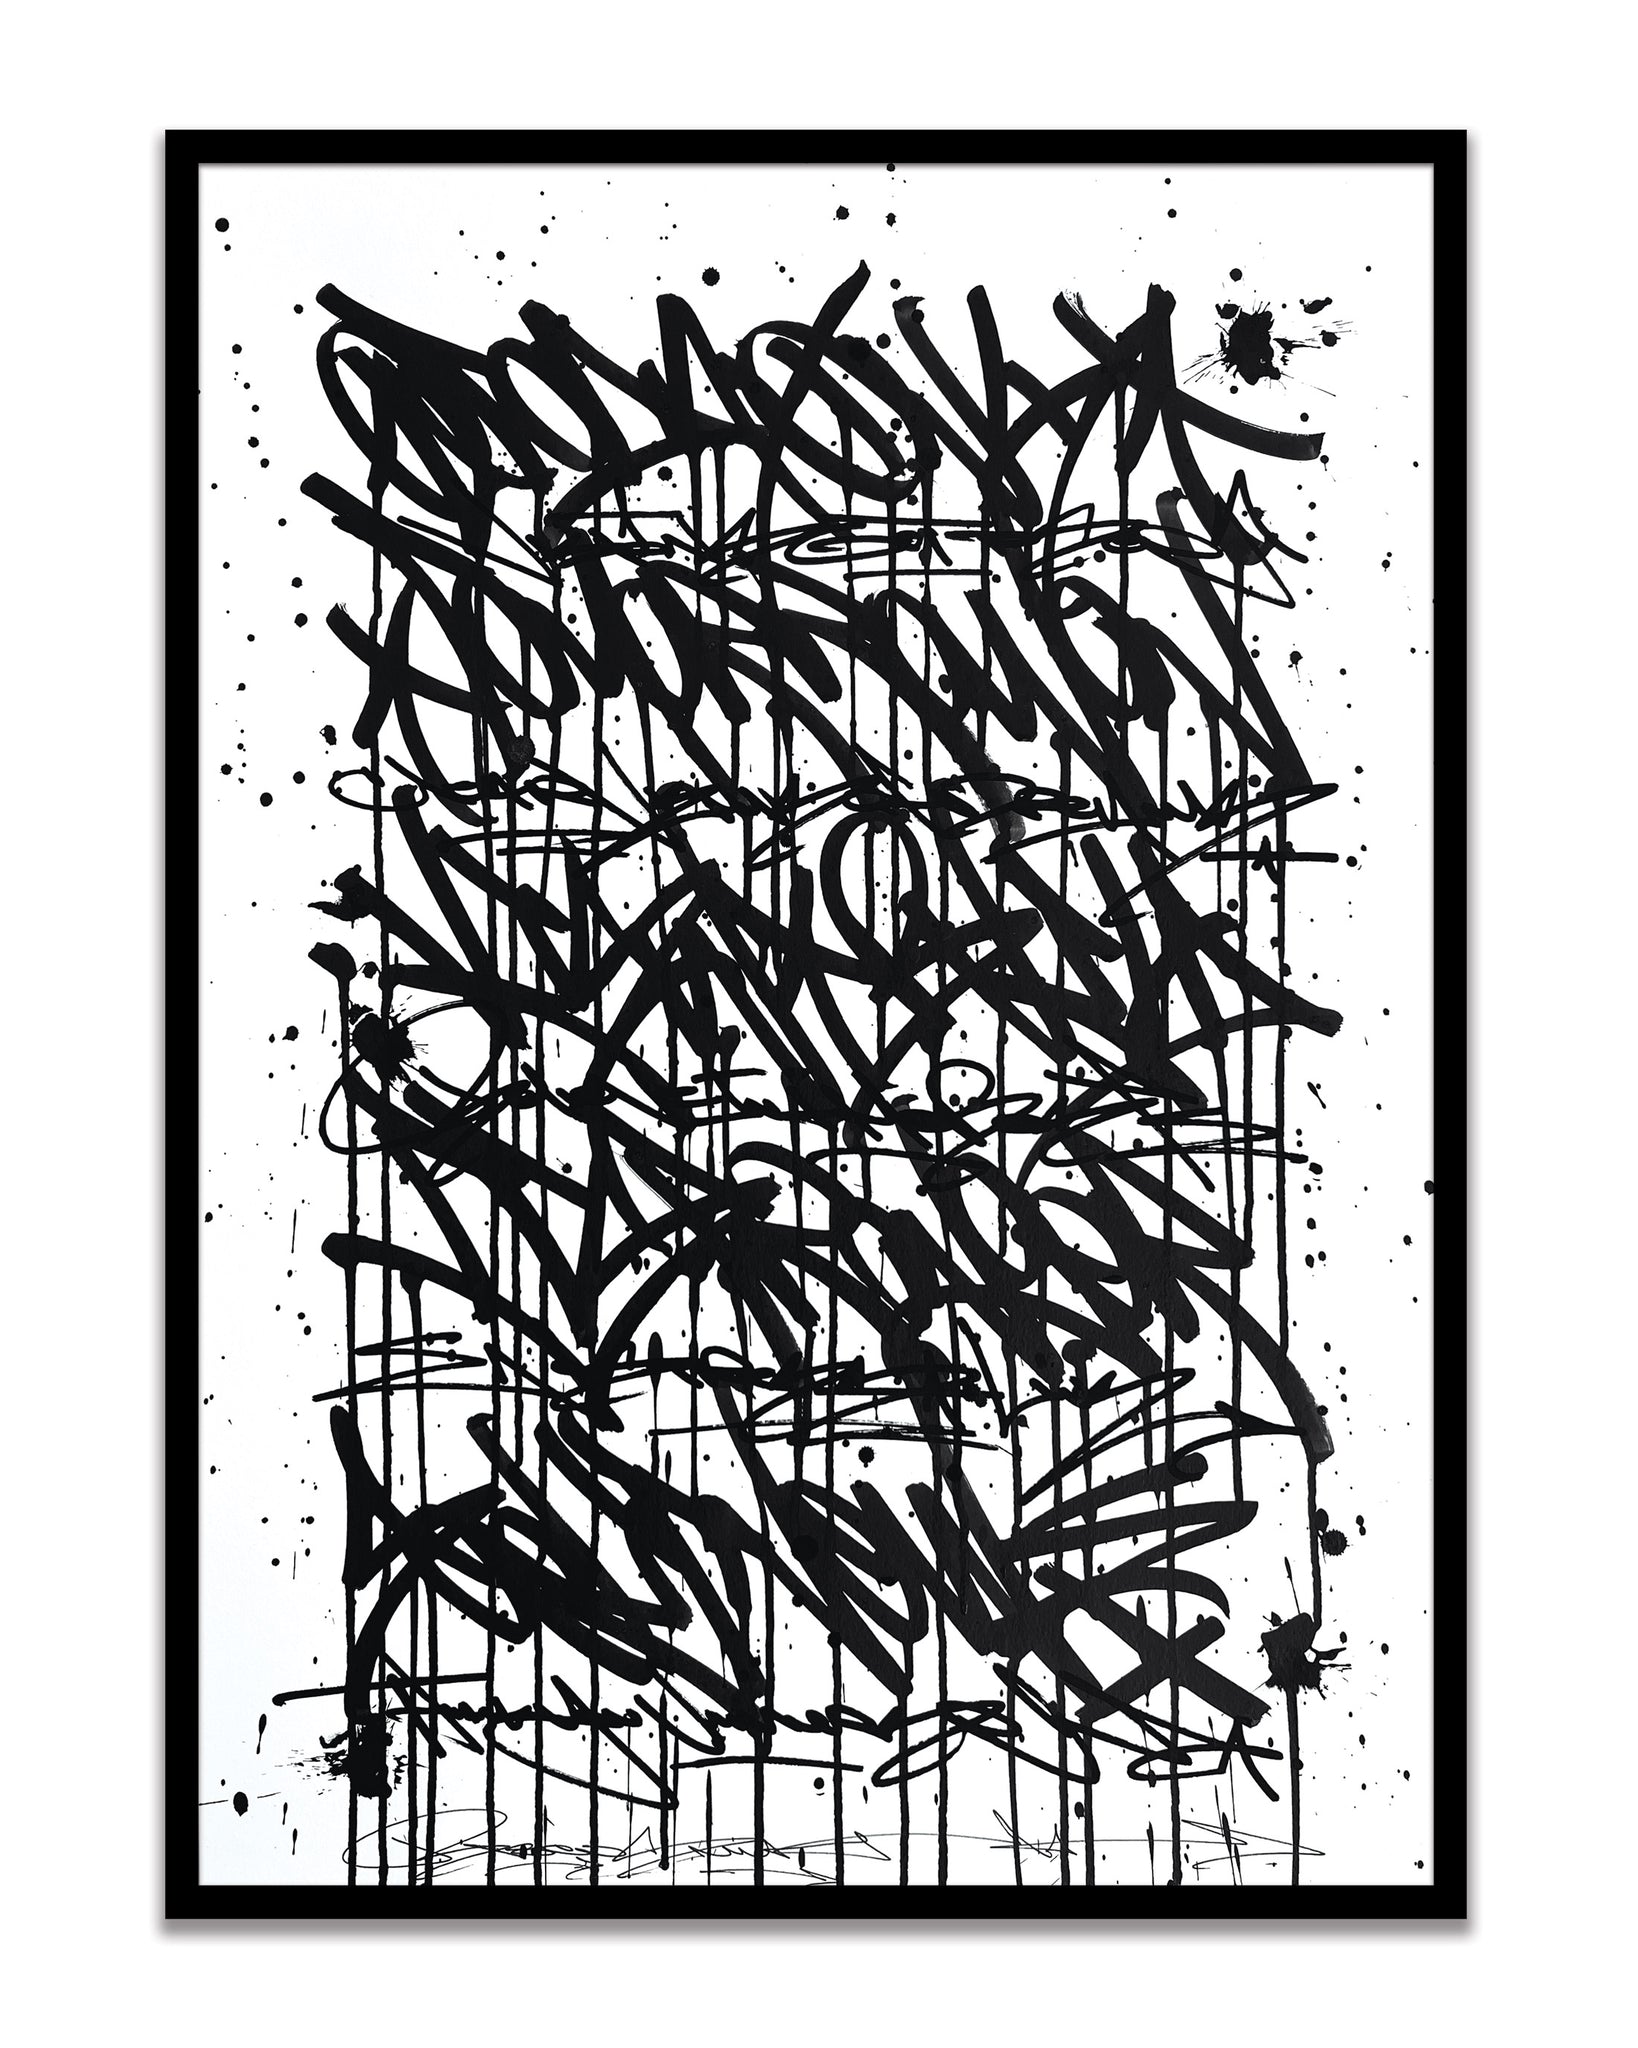 Fear Less Live More 05 - original on paper 50 x 70 cm